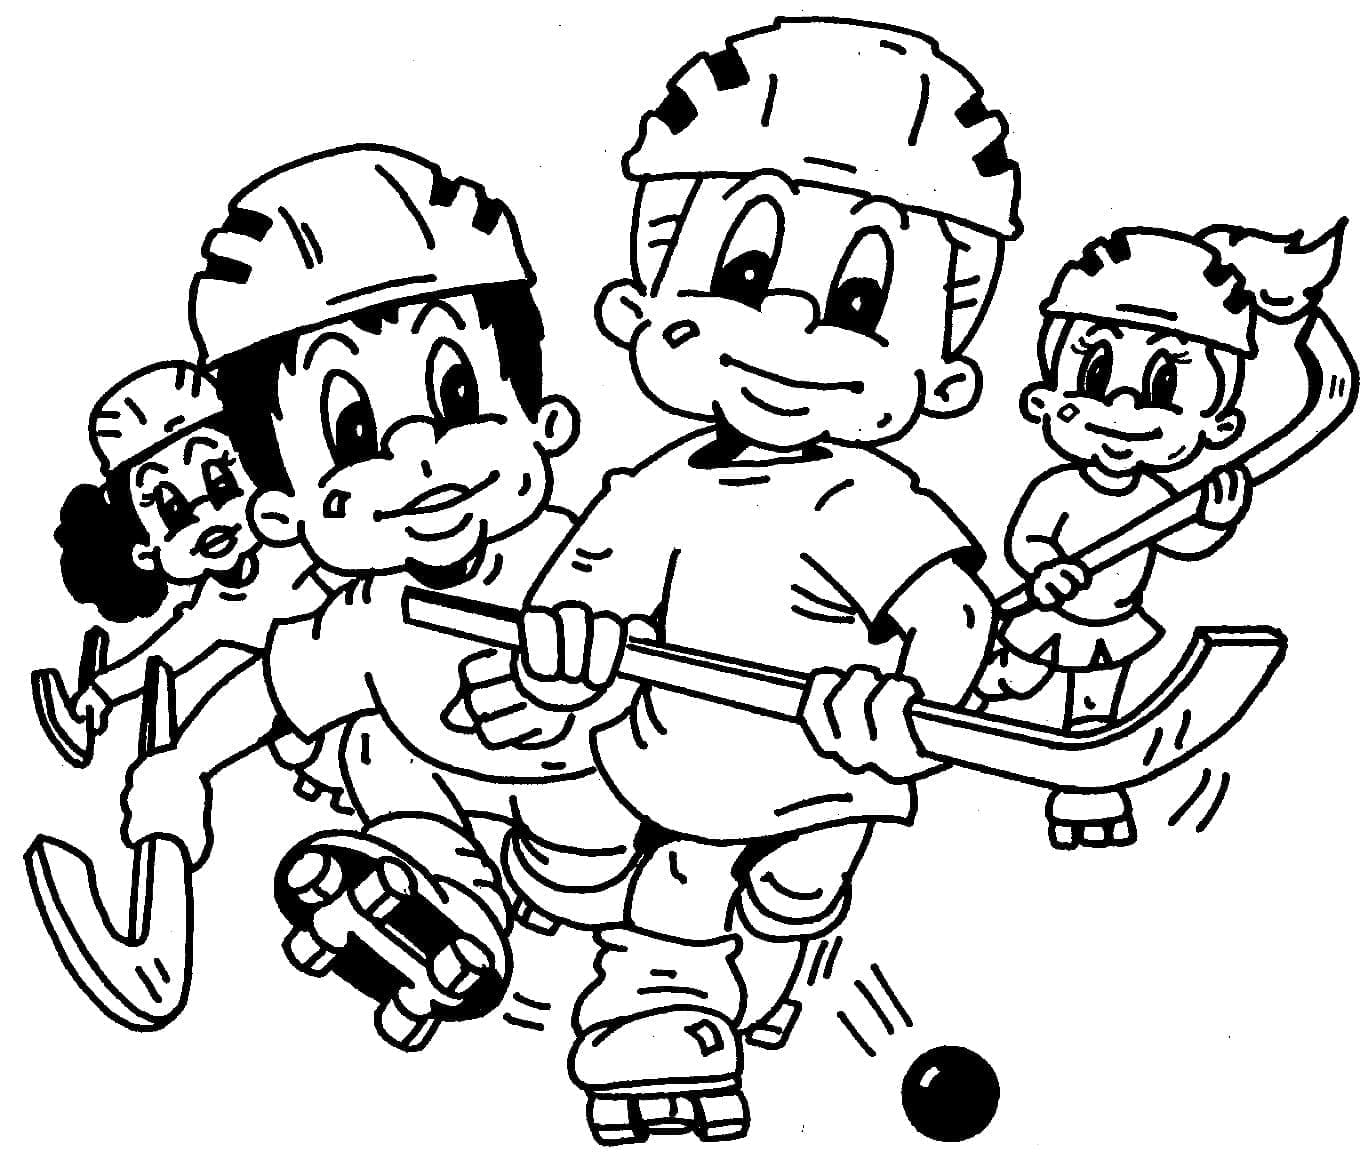 Děti hrají hokej image omalovánka